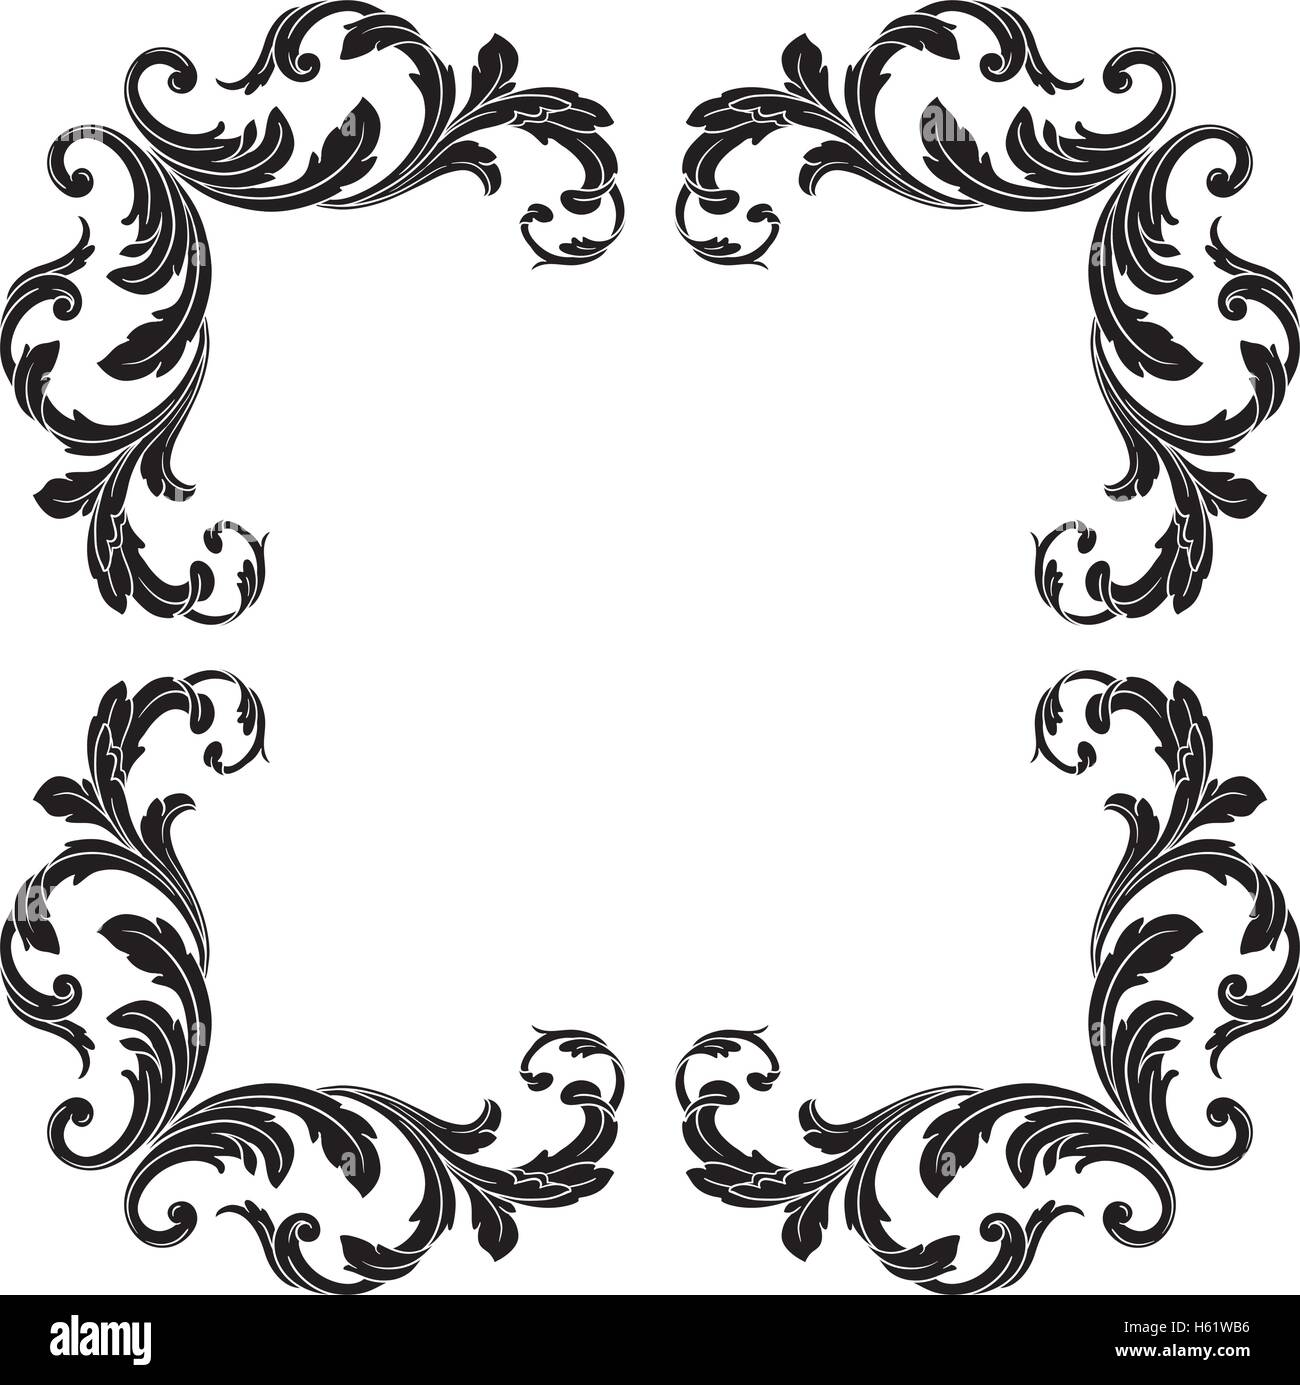 Vintage cadre baroque faites défiler la gravure d'ornement floral frontière modèle rétro style antique feuillage d'acanthe desi décoratif de turbulences Illustration de Vecteur